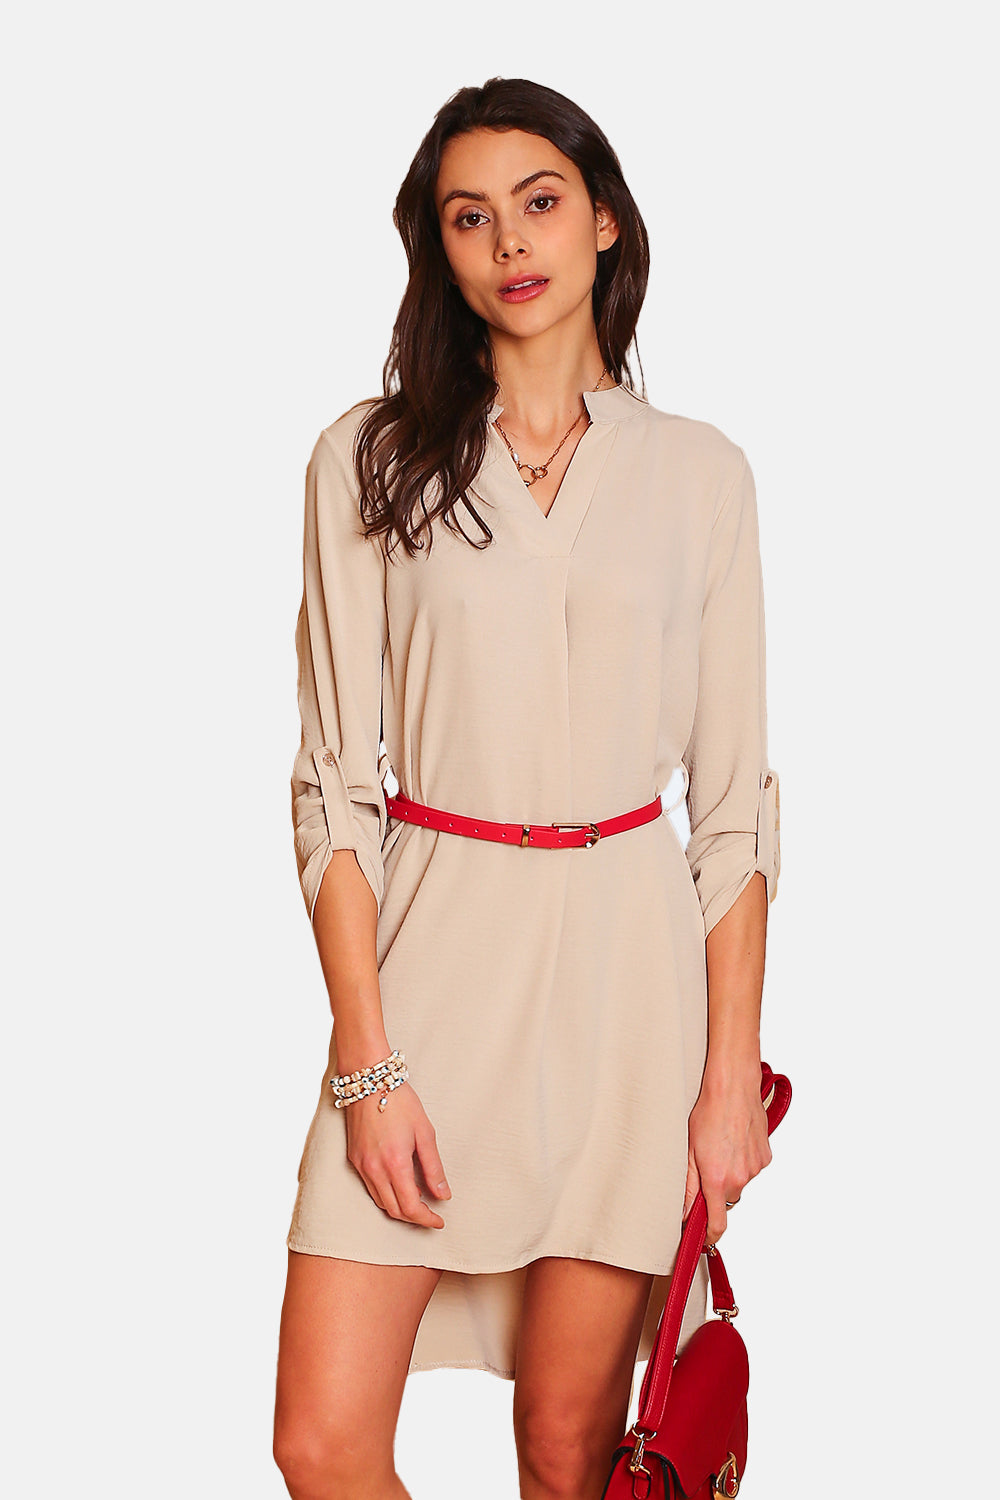 Kleid mit Henley-Kragen, schickem Gürtel und langen Ärmeln